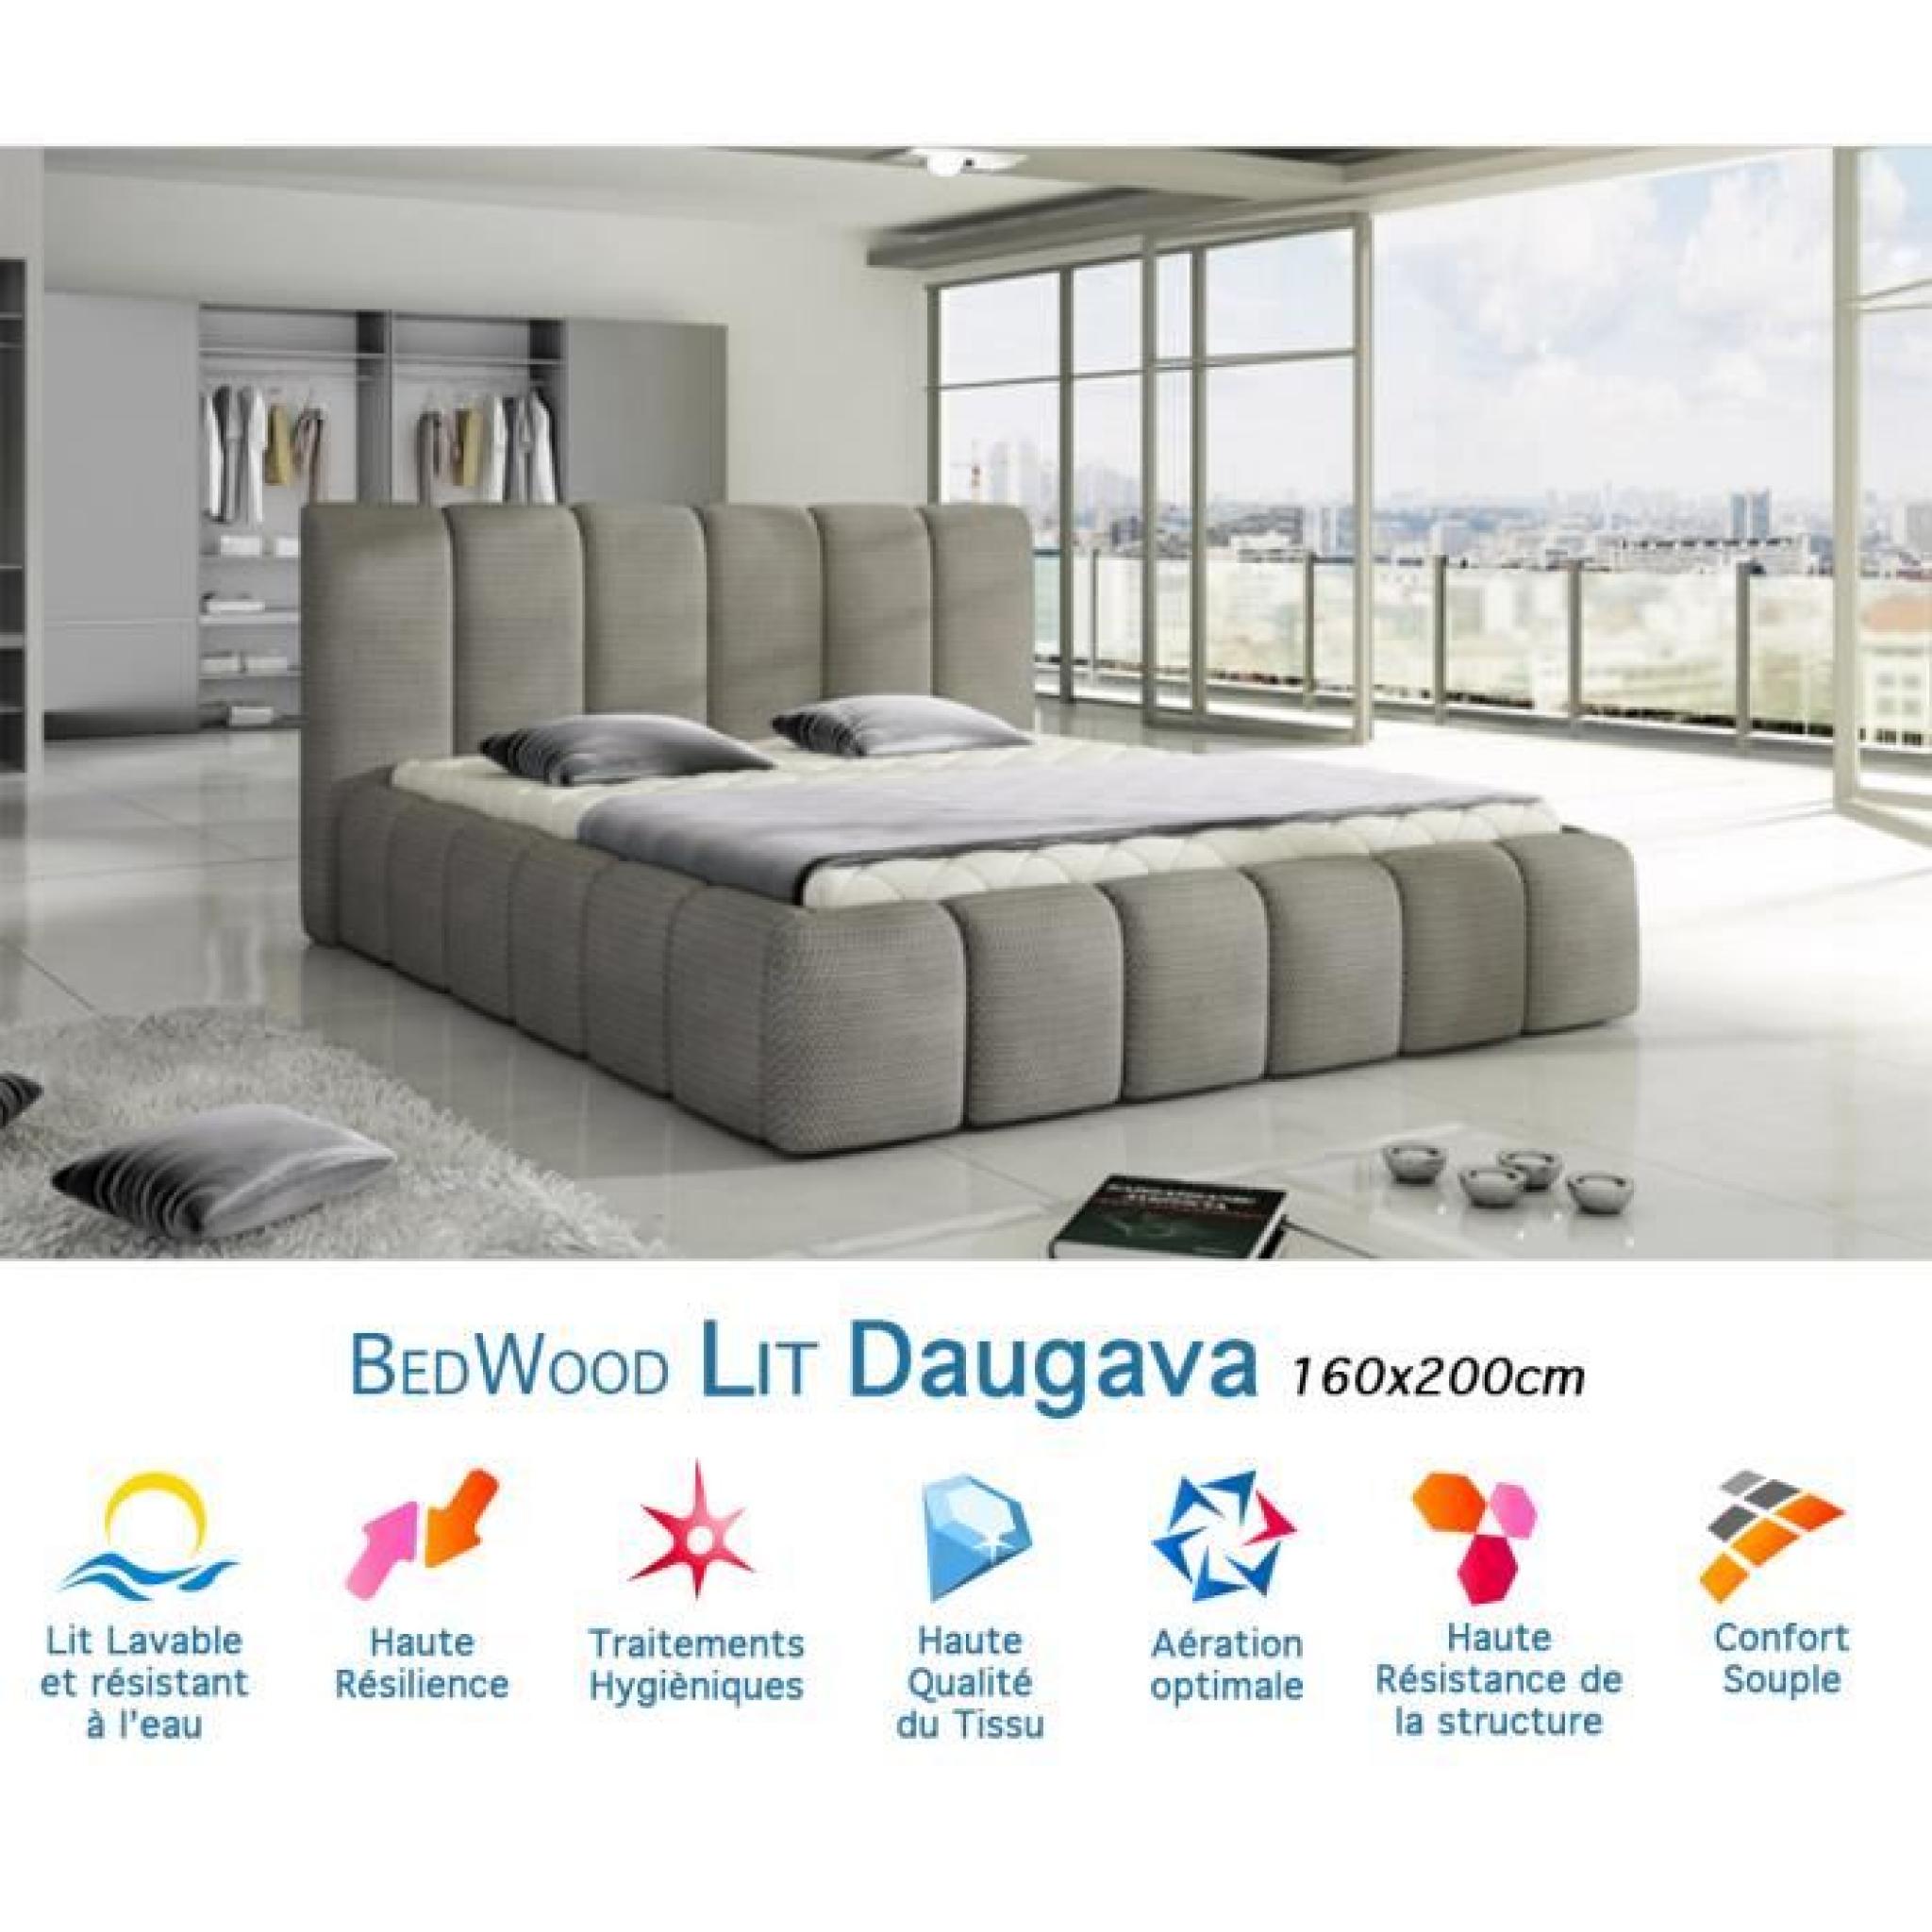 Lit Design Bedwood Daugava 160x200cm